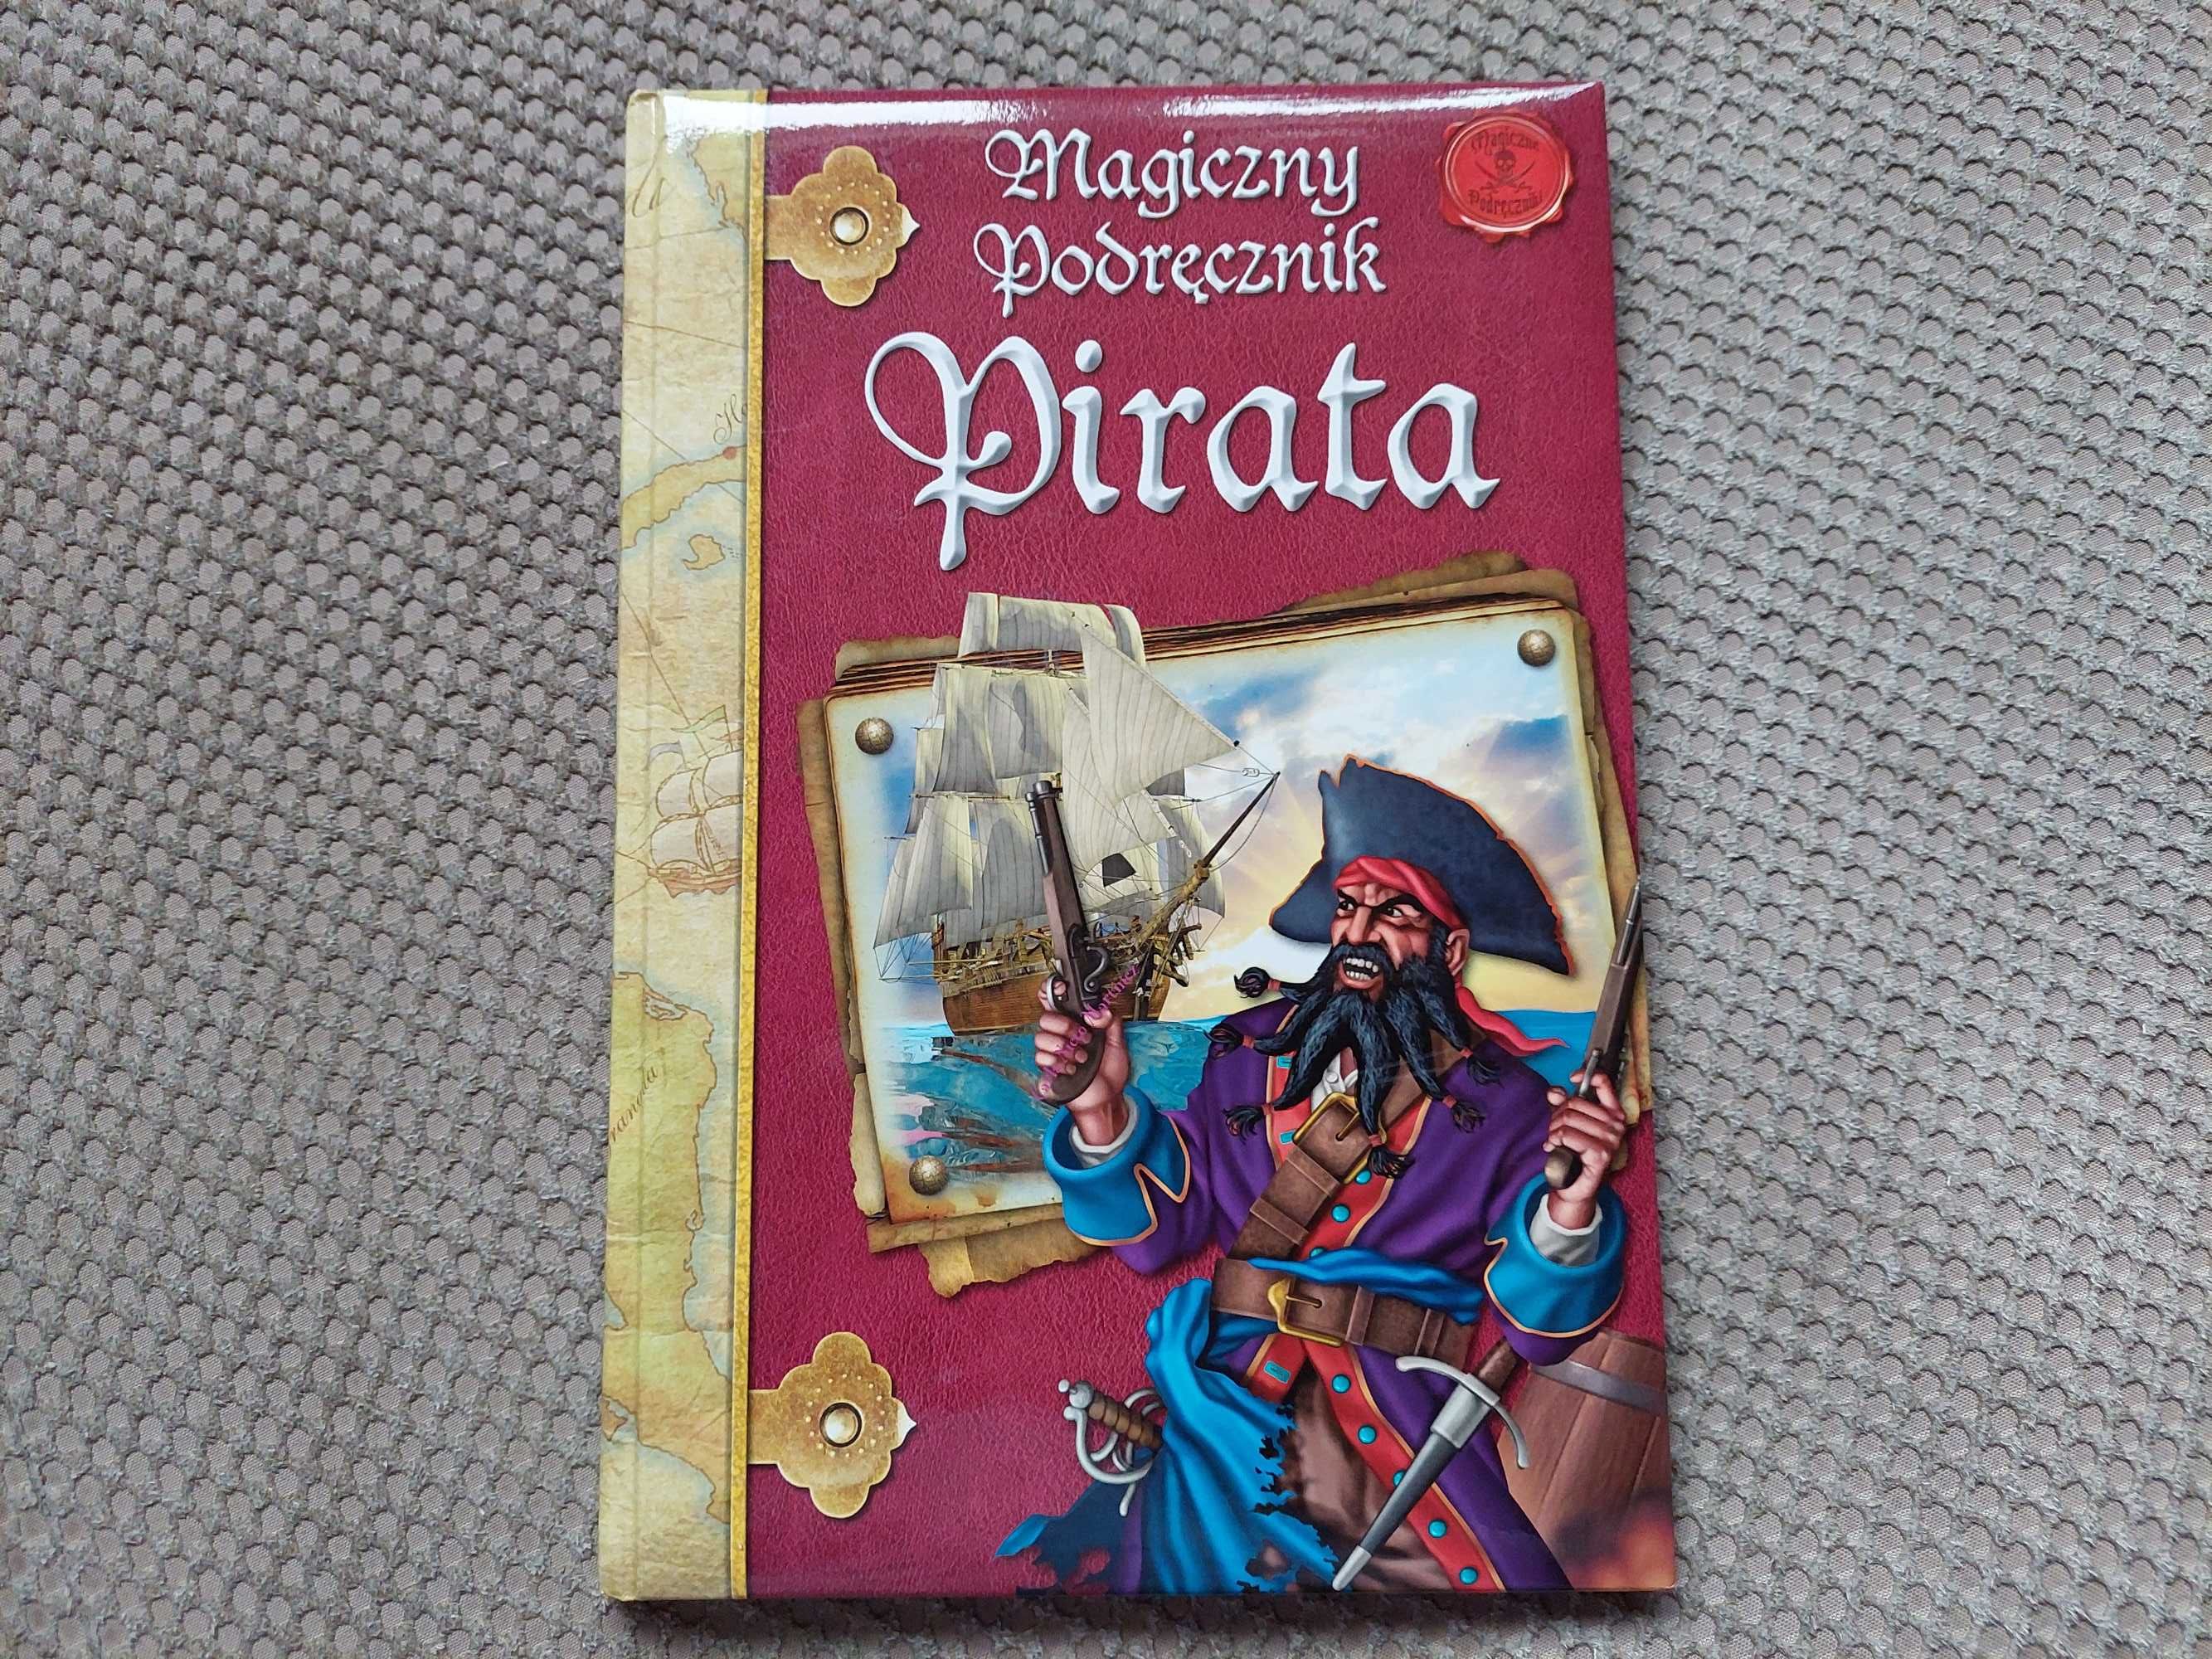 "Magiczny podręcznik pirata"